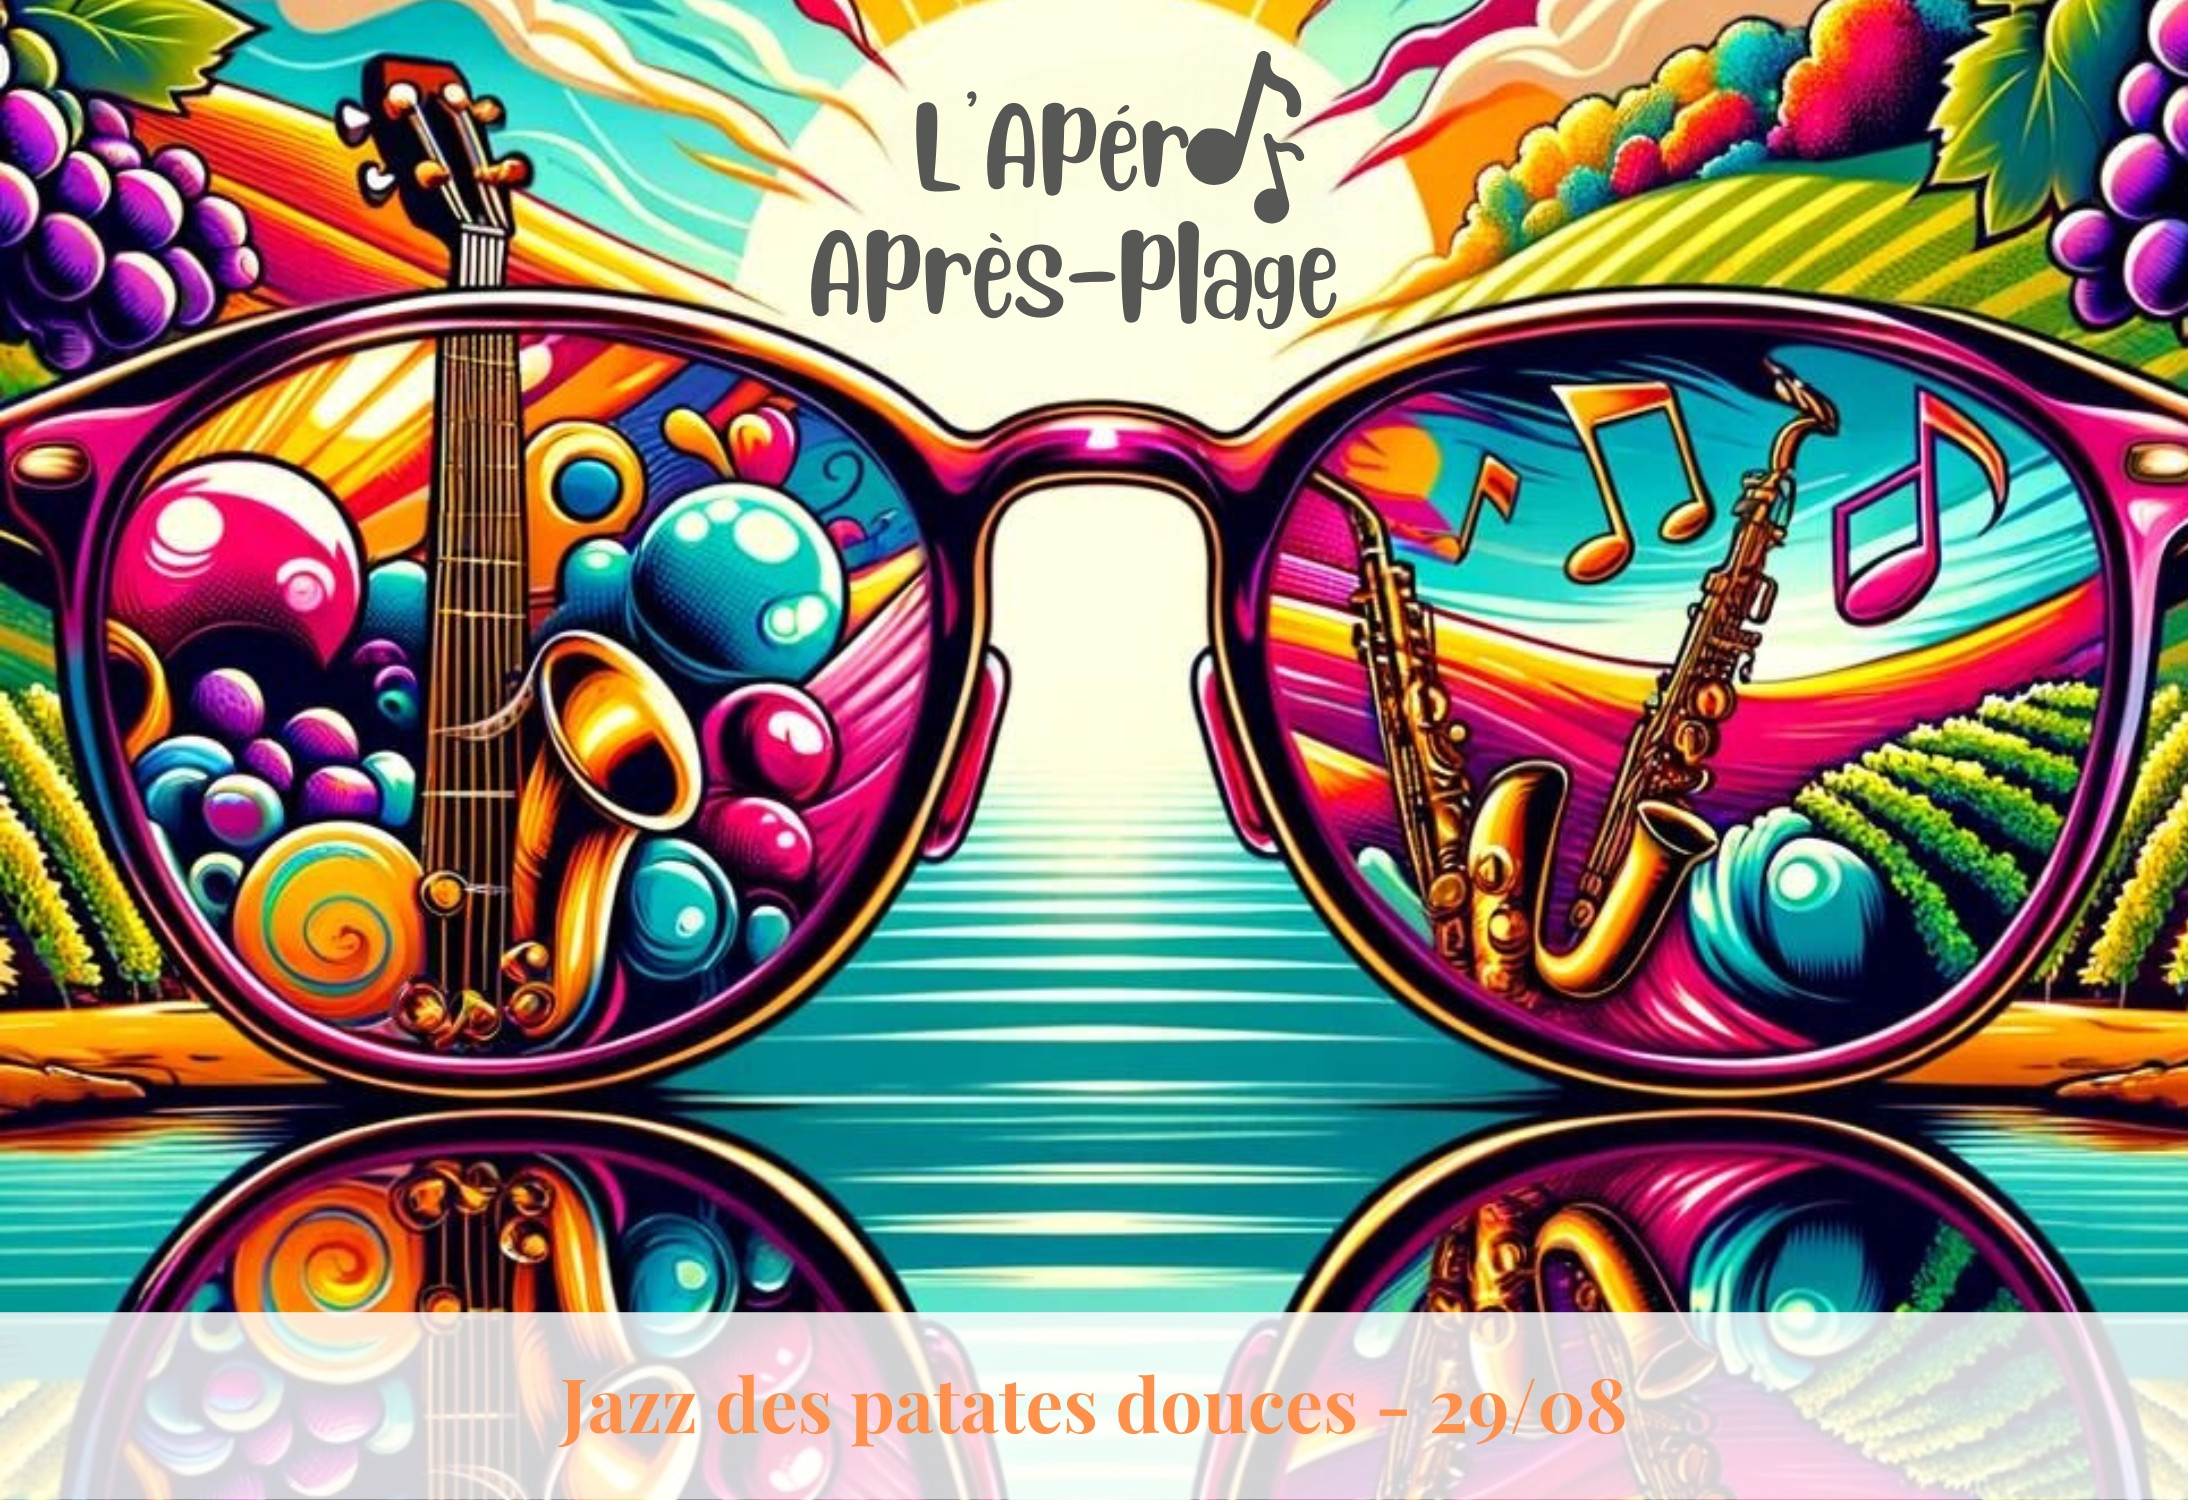 L'Apro Aprs-Plage - Le Jazz des Patates Douces